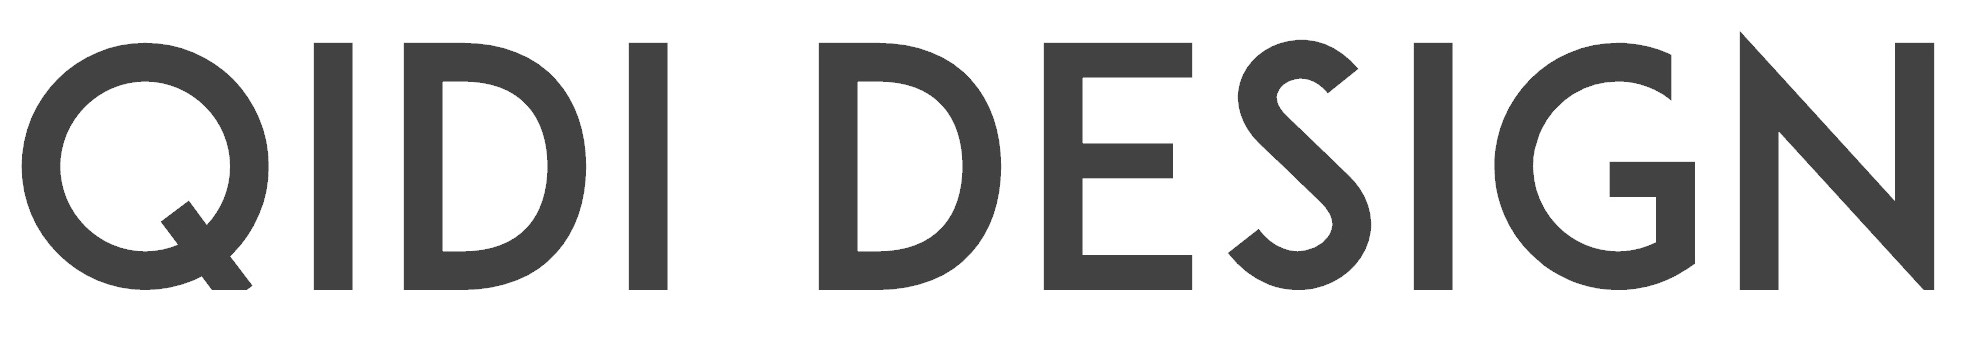 Logo Qidi Design